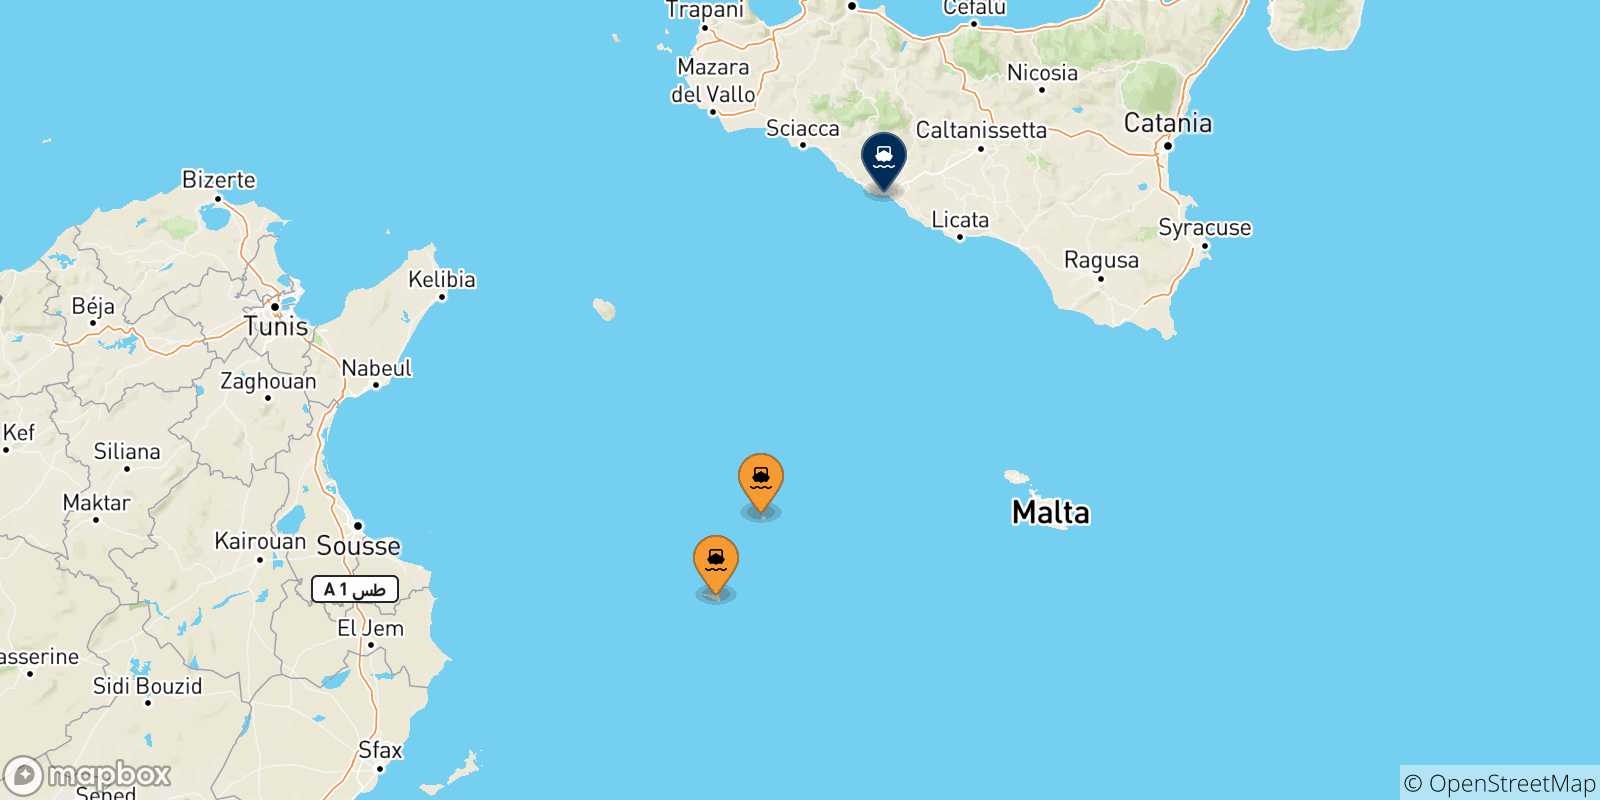 Mappa delle possibili rotte tra l'Italia e Porto Empedocle